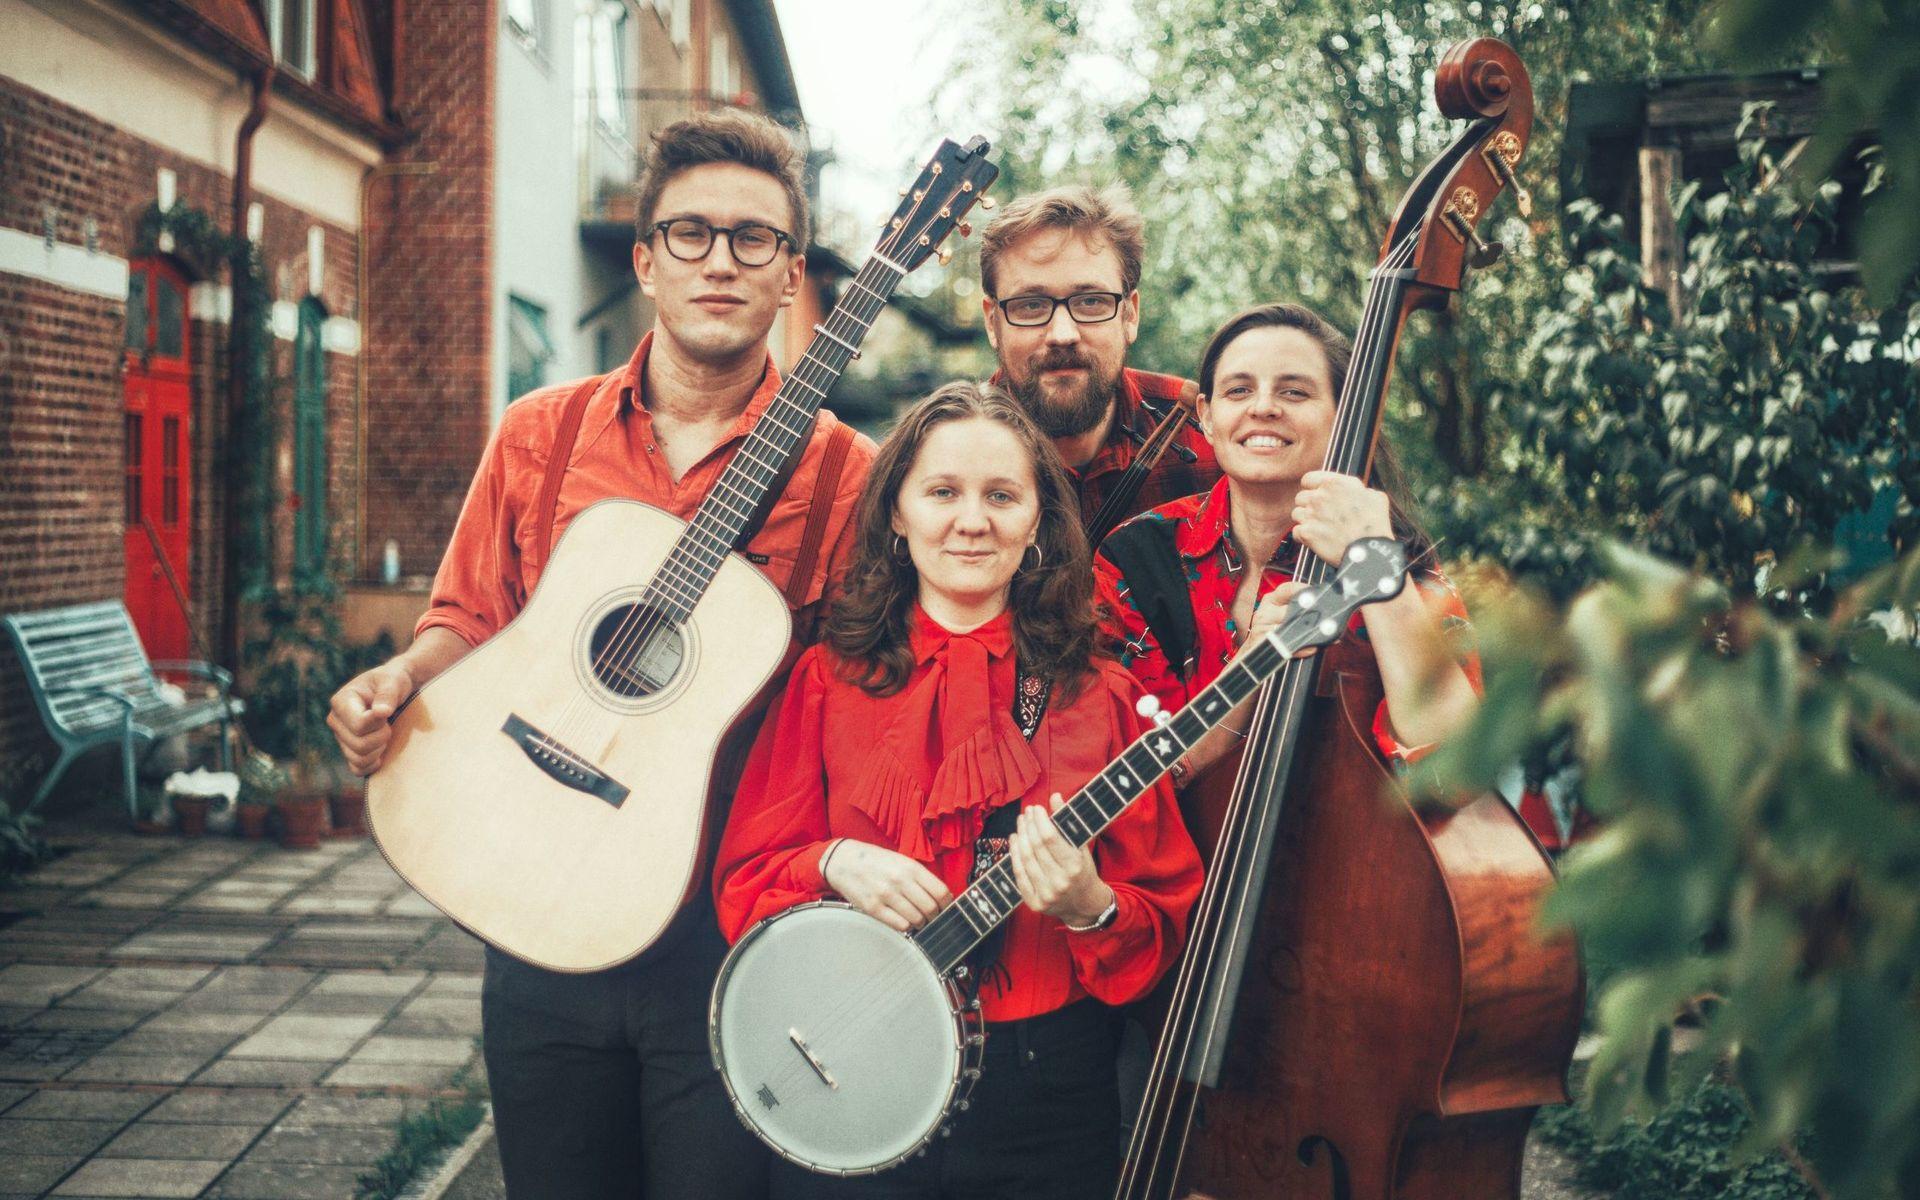 HAPPY HEARTACHES. Beskriver bluegrass som sentimental, banal och alldeles, alldeles underbar. Kvartetten kommer från lika delar Göteborg och Malmö. Från vänster: Max Tellving, Alicia Jardine, Albin Ekman, Brita Björs.